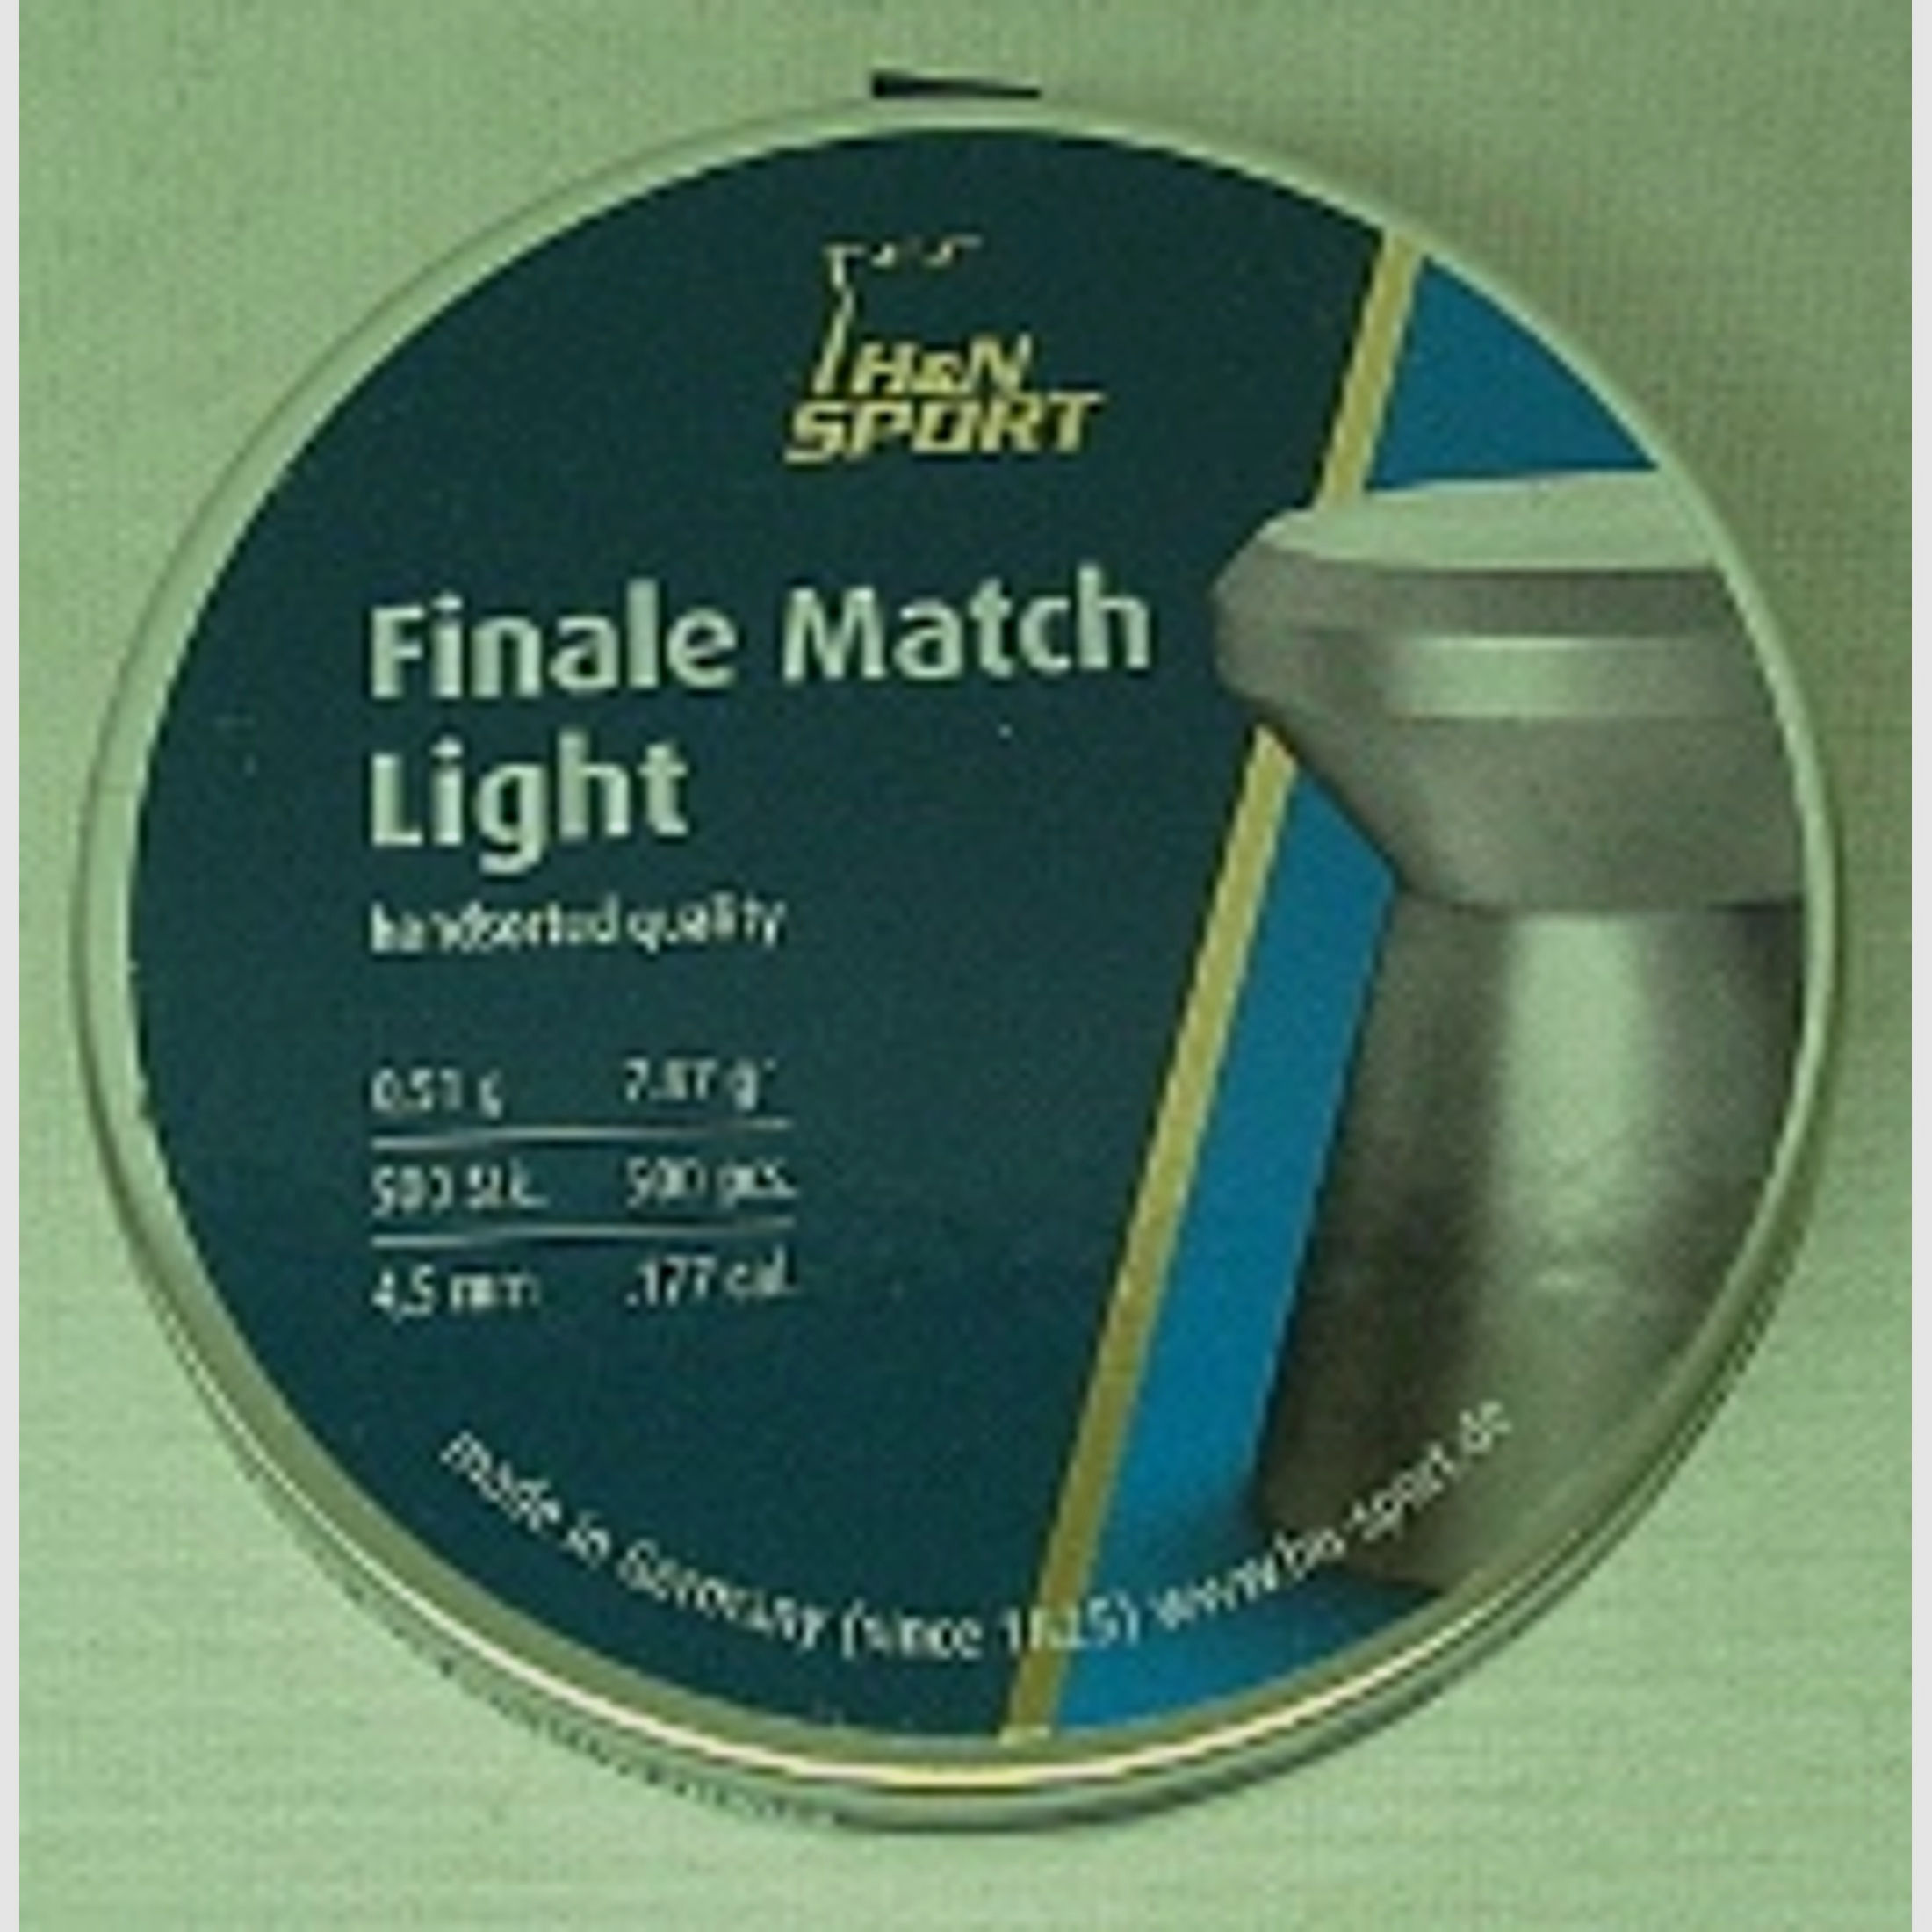 Finale Match Light - 4,49mm/0,49g/7,56gr/500/LP